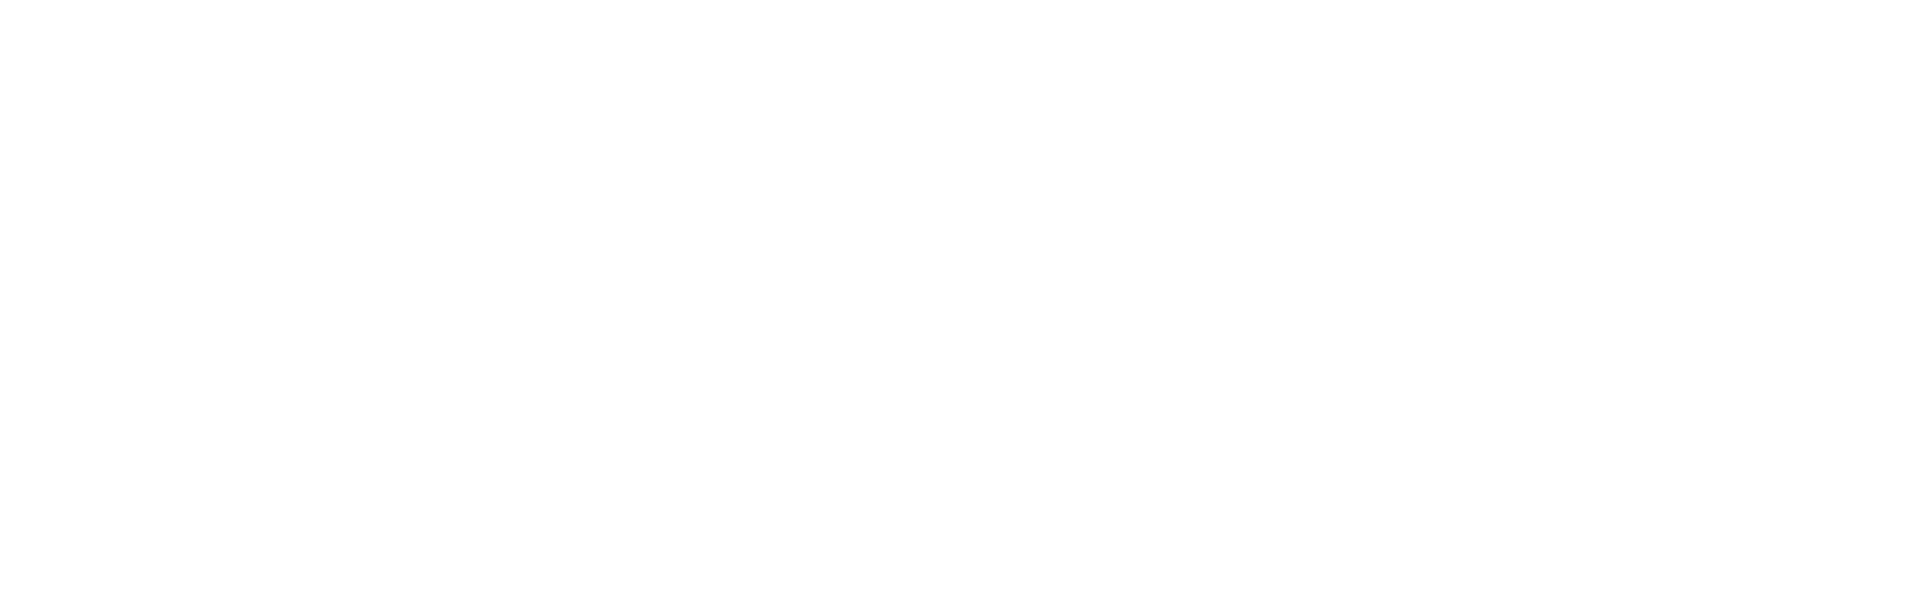 Brewer-Porch Children's Center